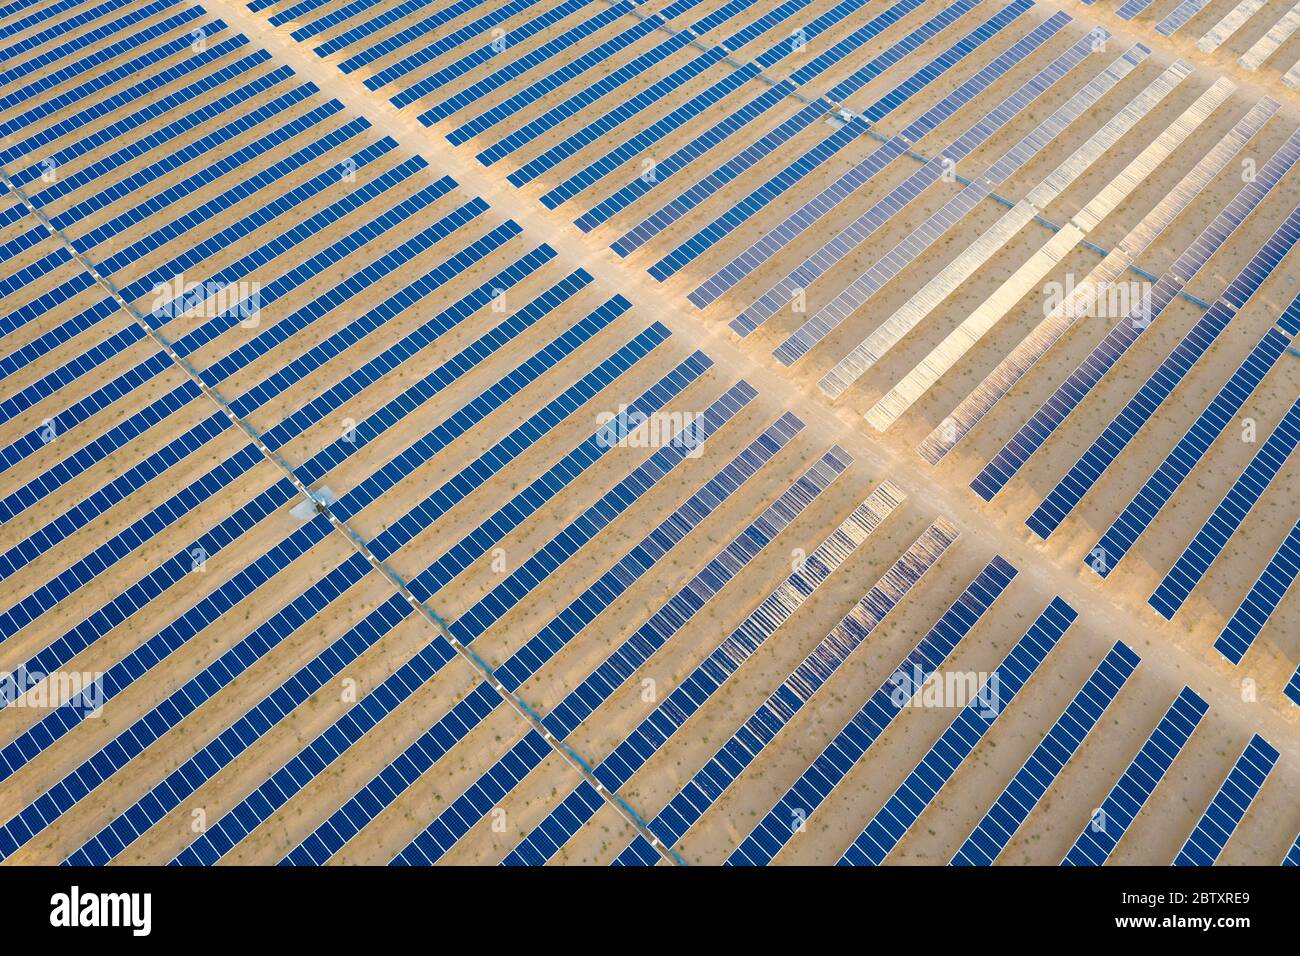 Vue aérienne d'une ferme de panneaux solaires photovoltaïques générant une énergie renouvelable durable dans une centrale électrique désertique. Banque D'Images